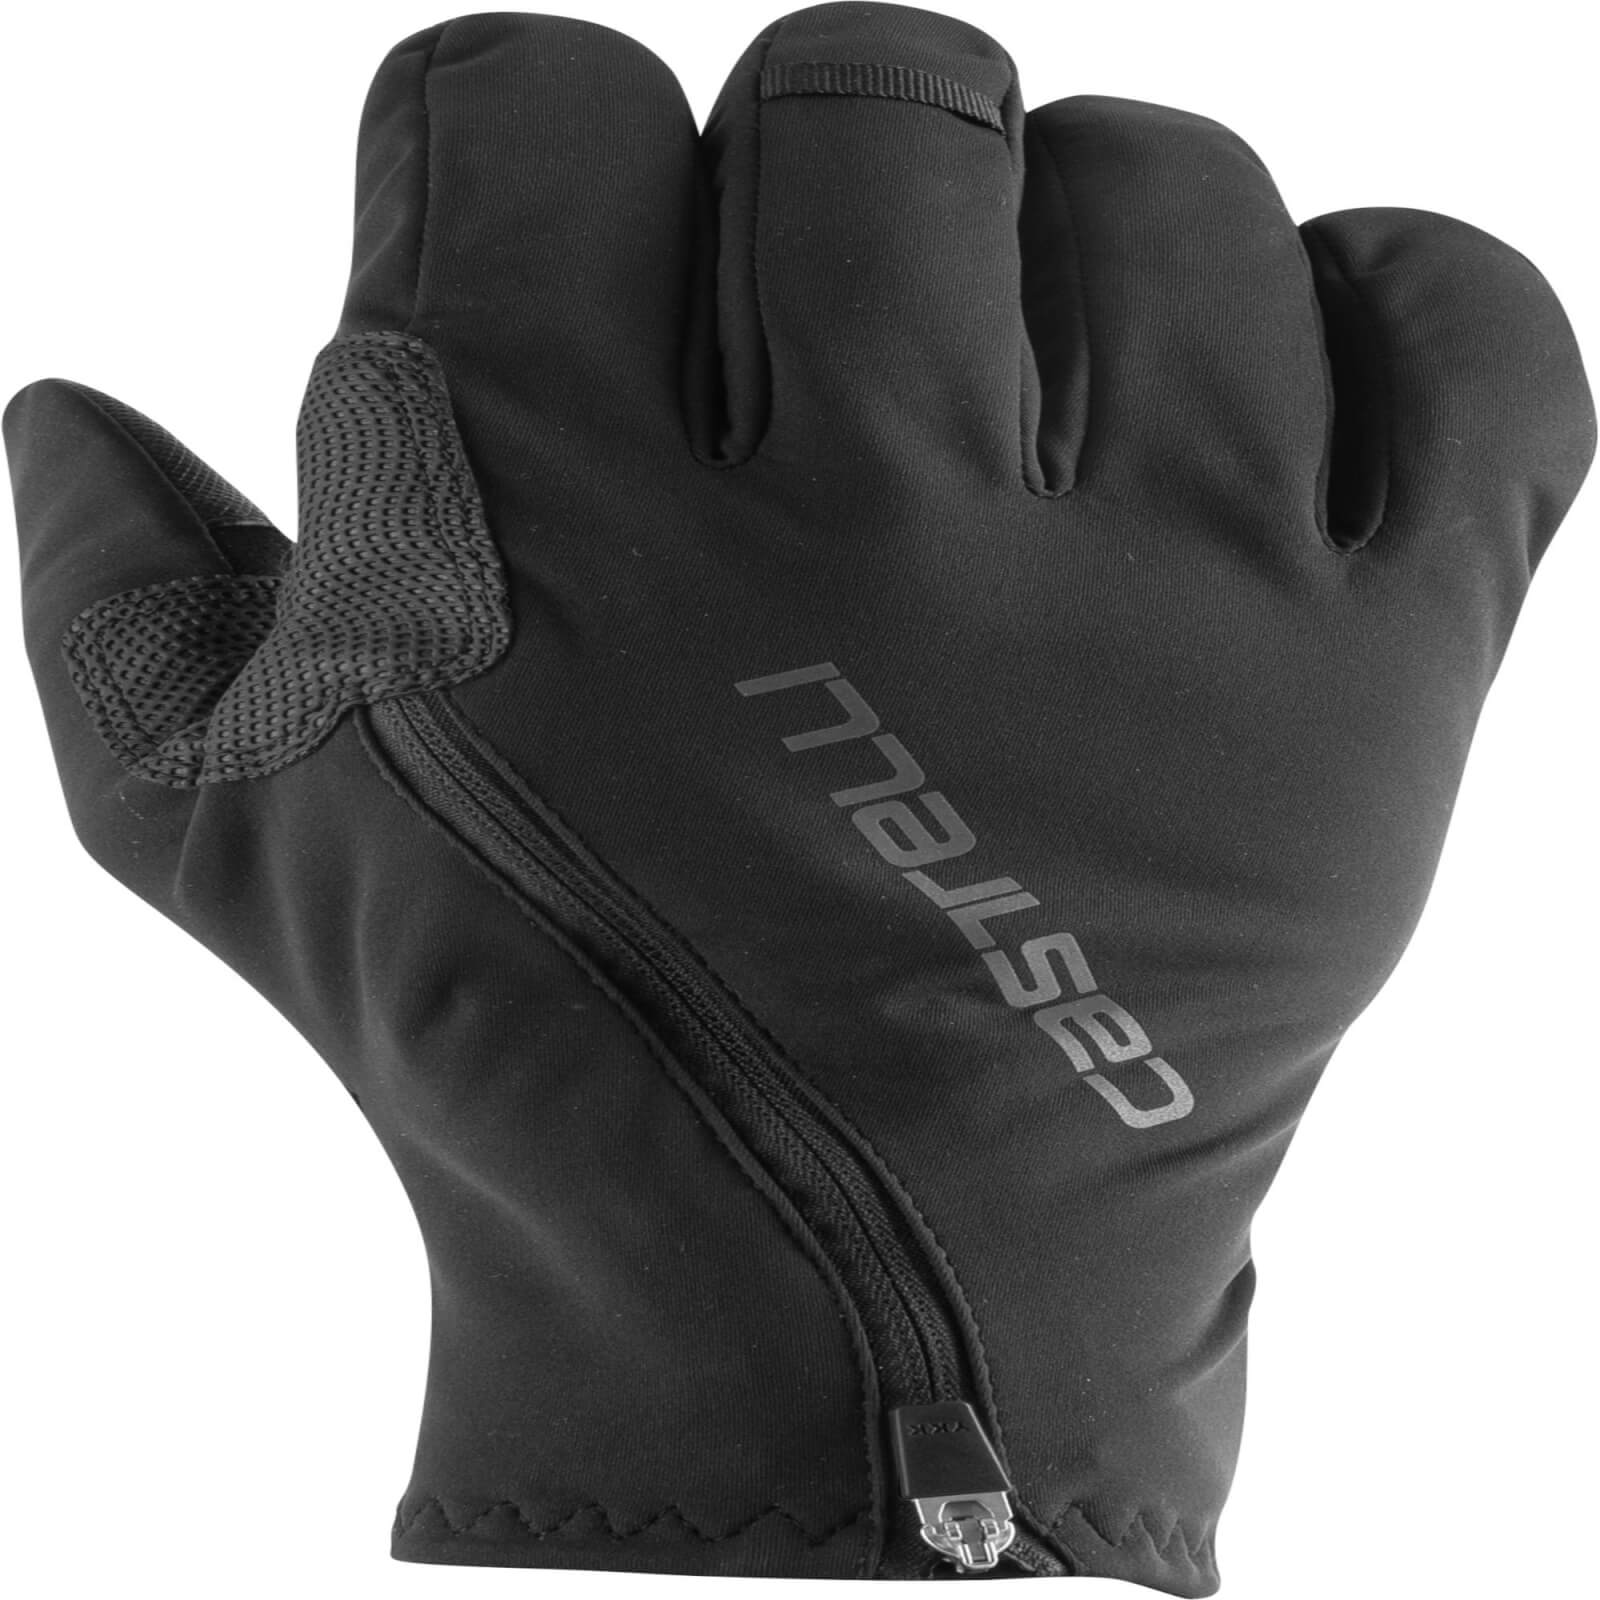 Castelli Spettacolo Ros Gloves - XXL - Black